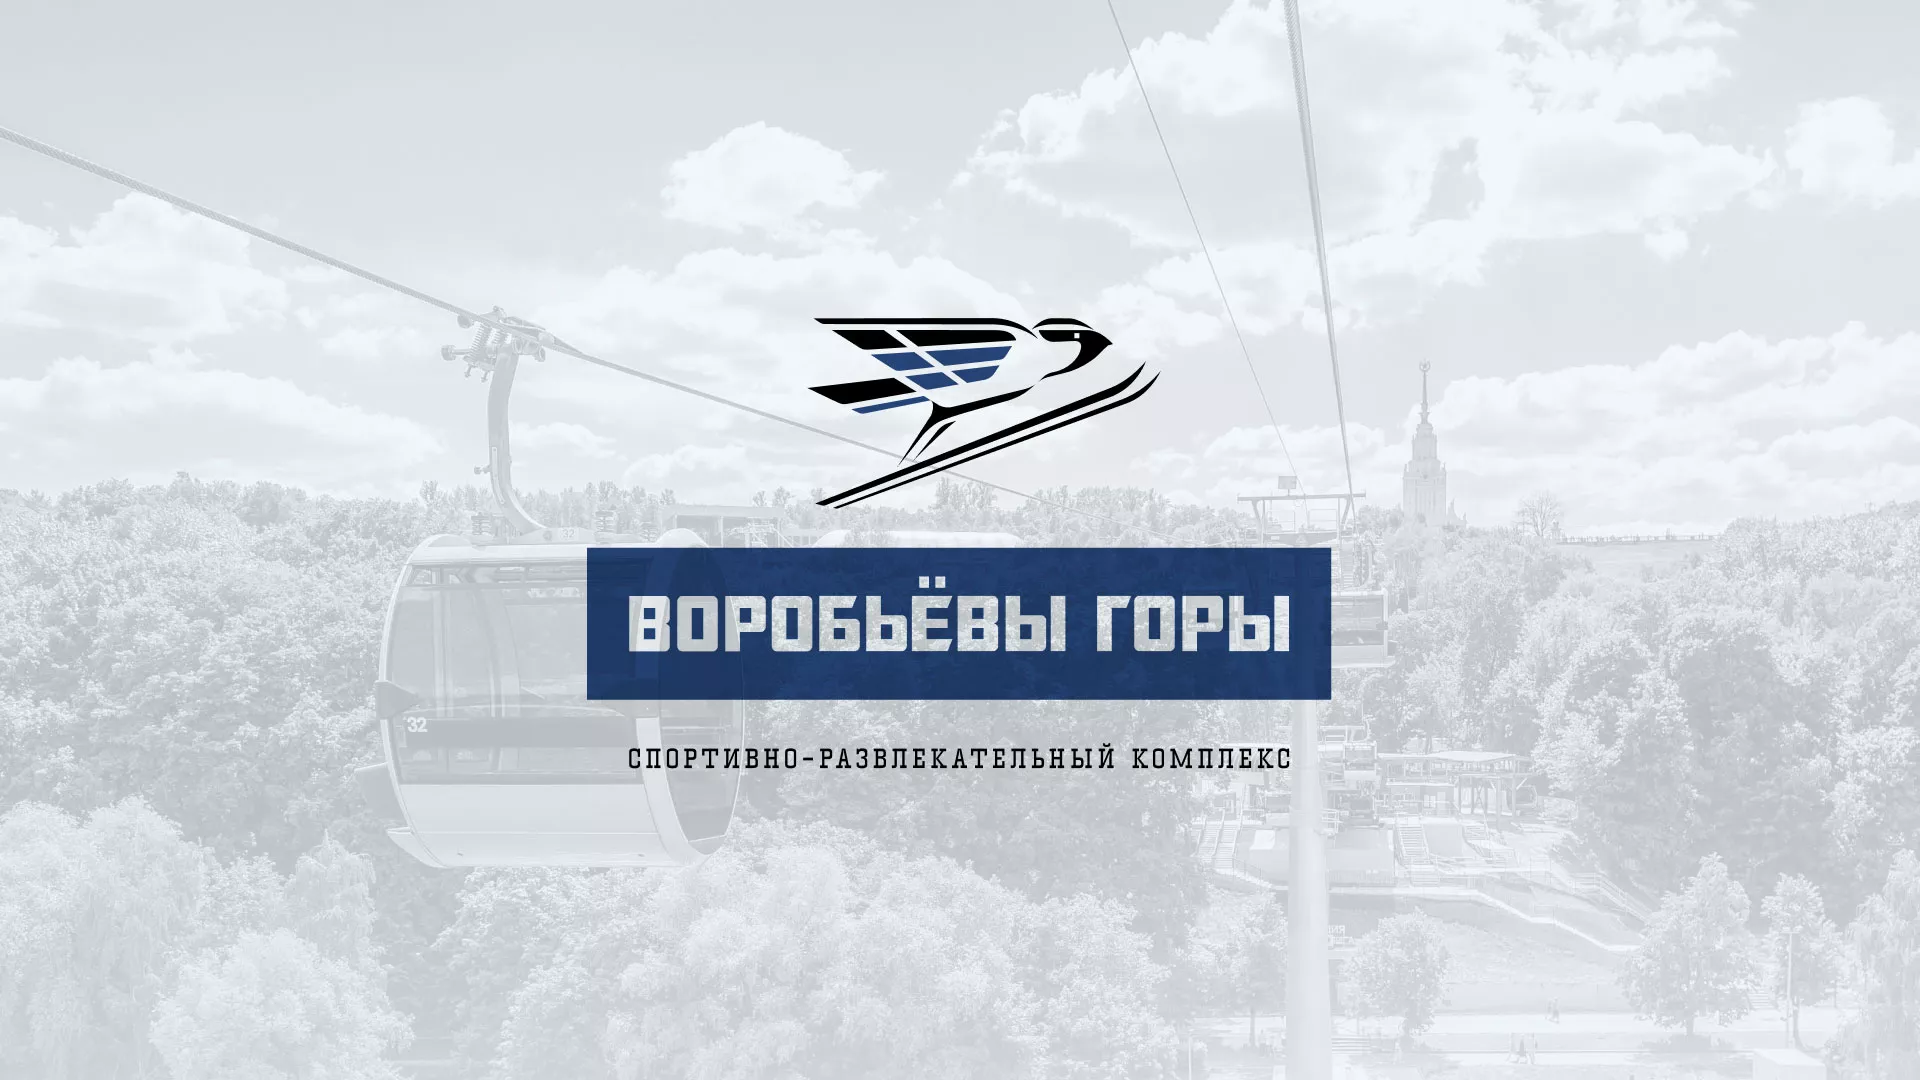 Разработка сайта в Лысково для спортивно-развлекательного комплекса «Воробьёвы горы»